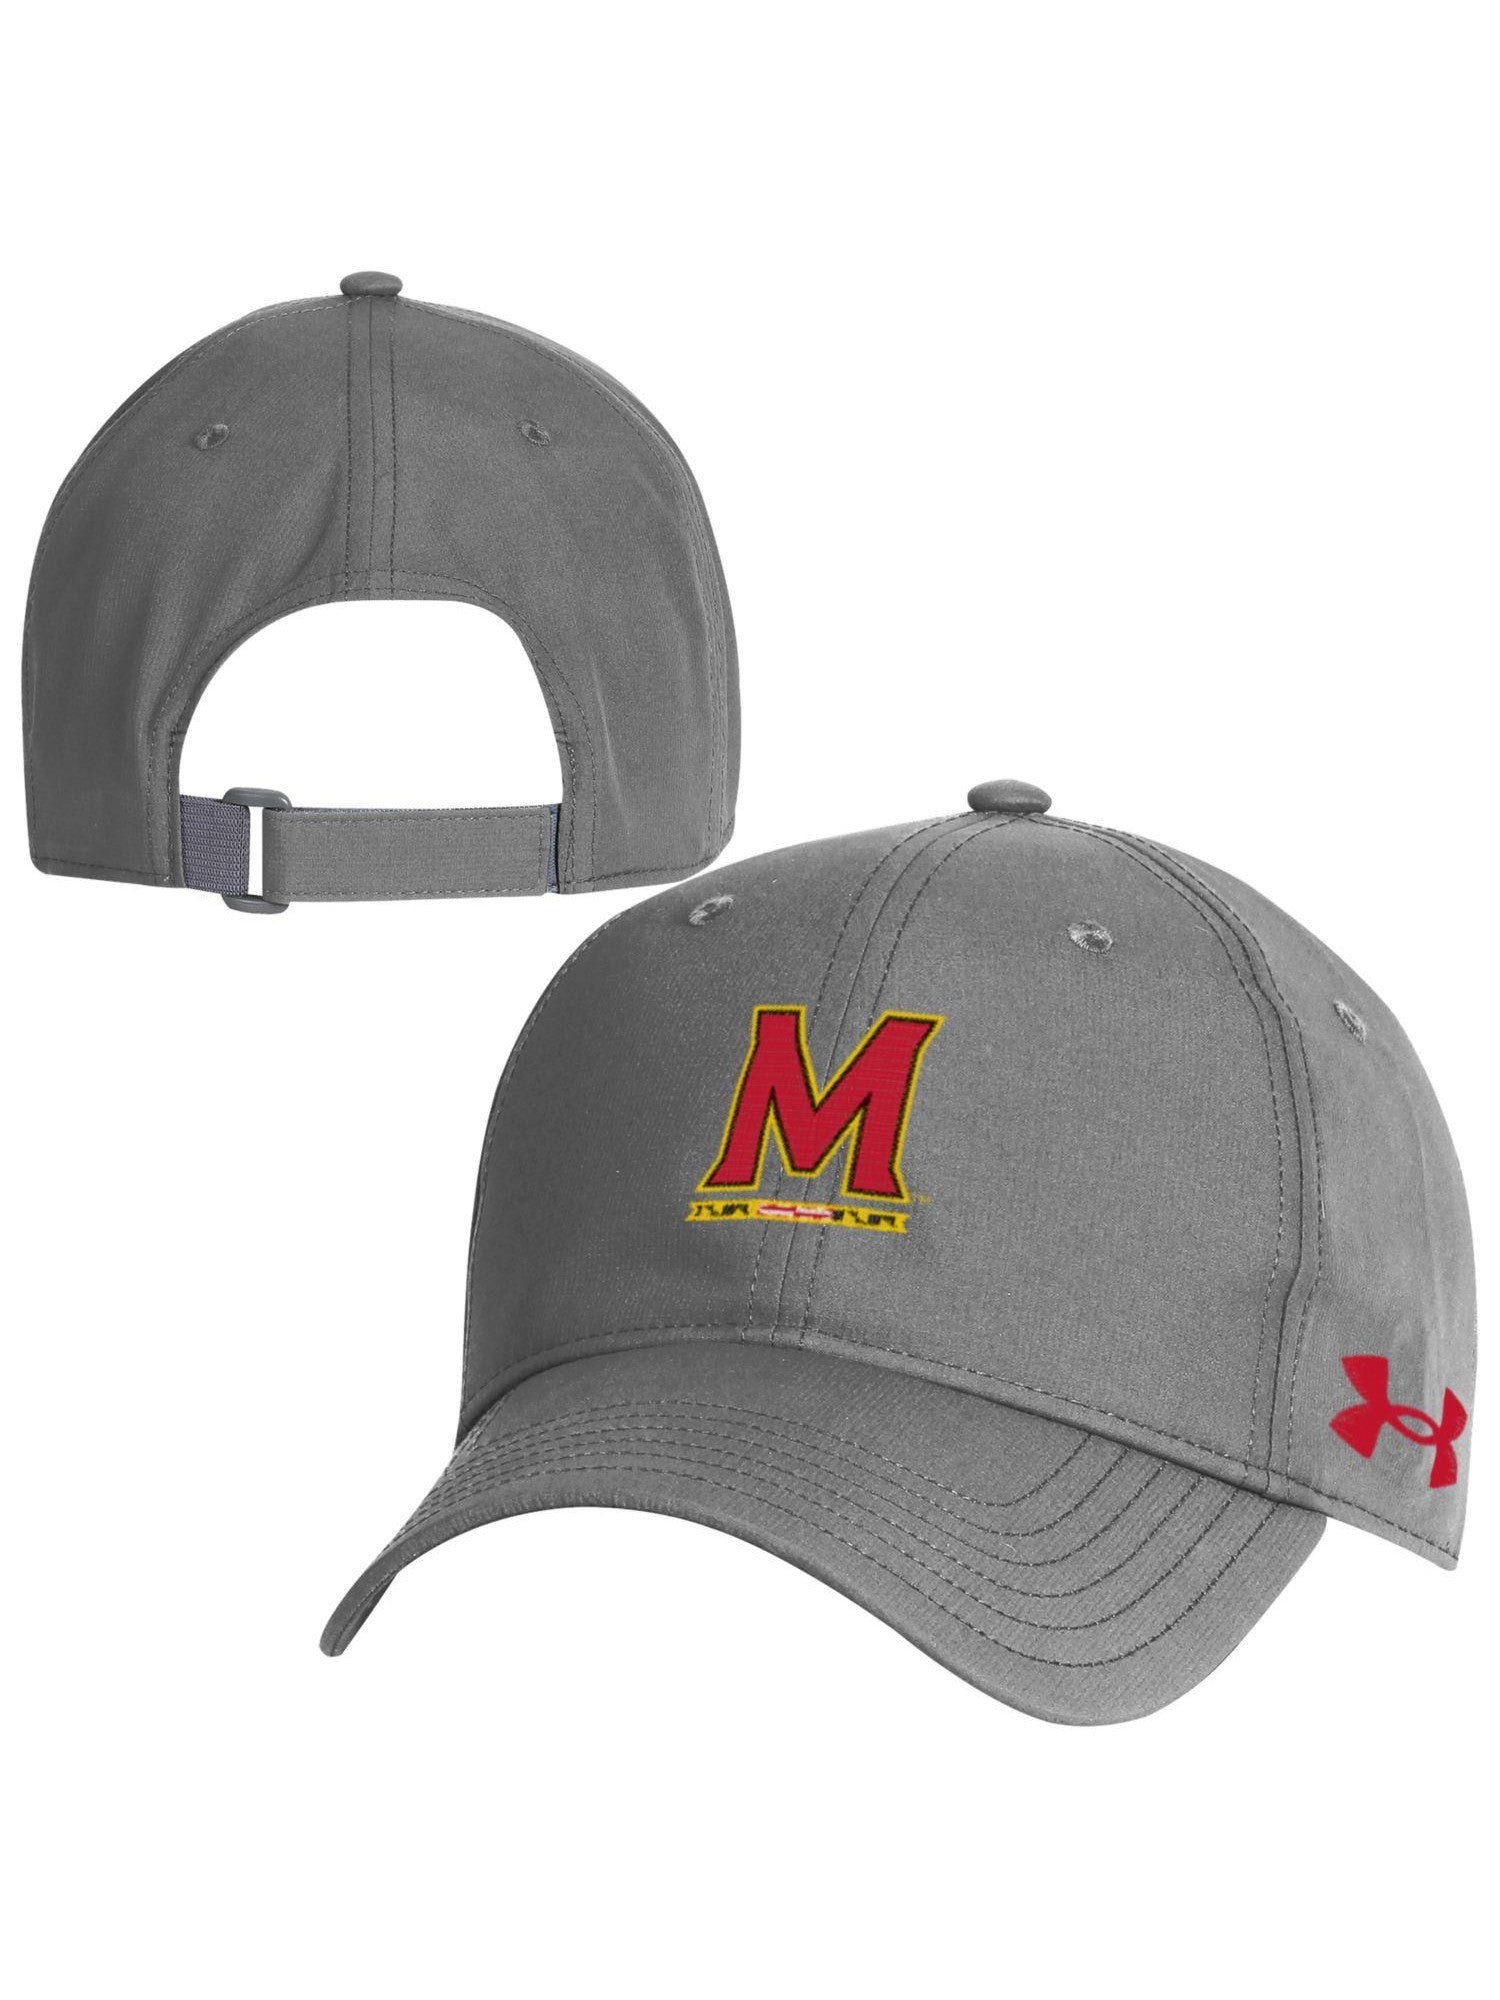 Under Armor University of Maryland Cap – Baseball Gifts Maryland (Grey)